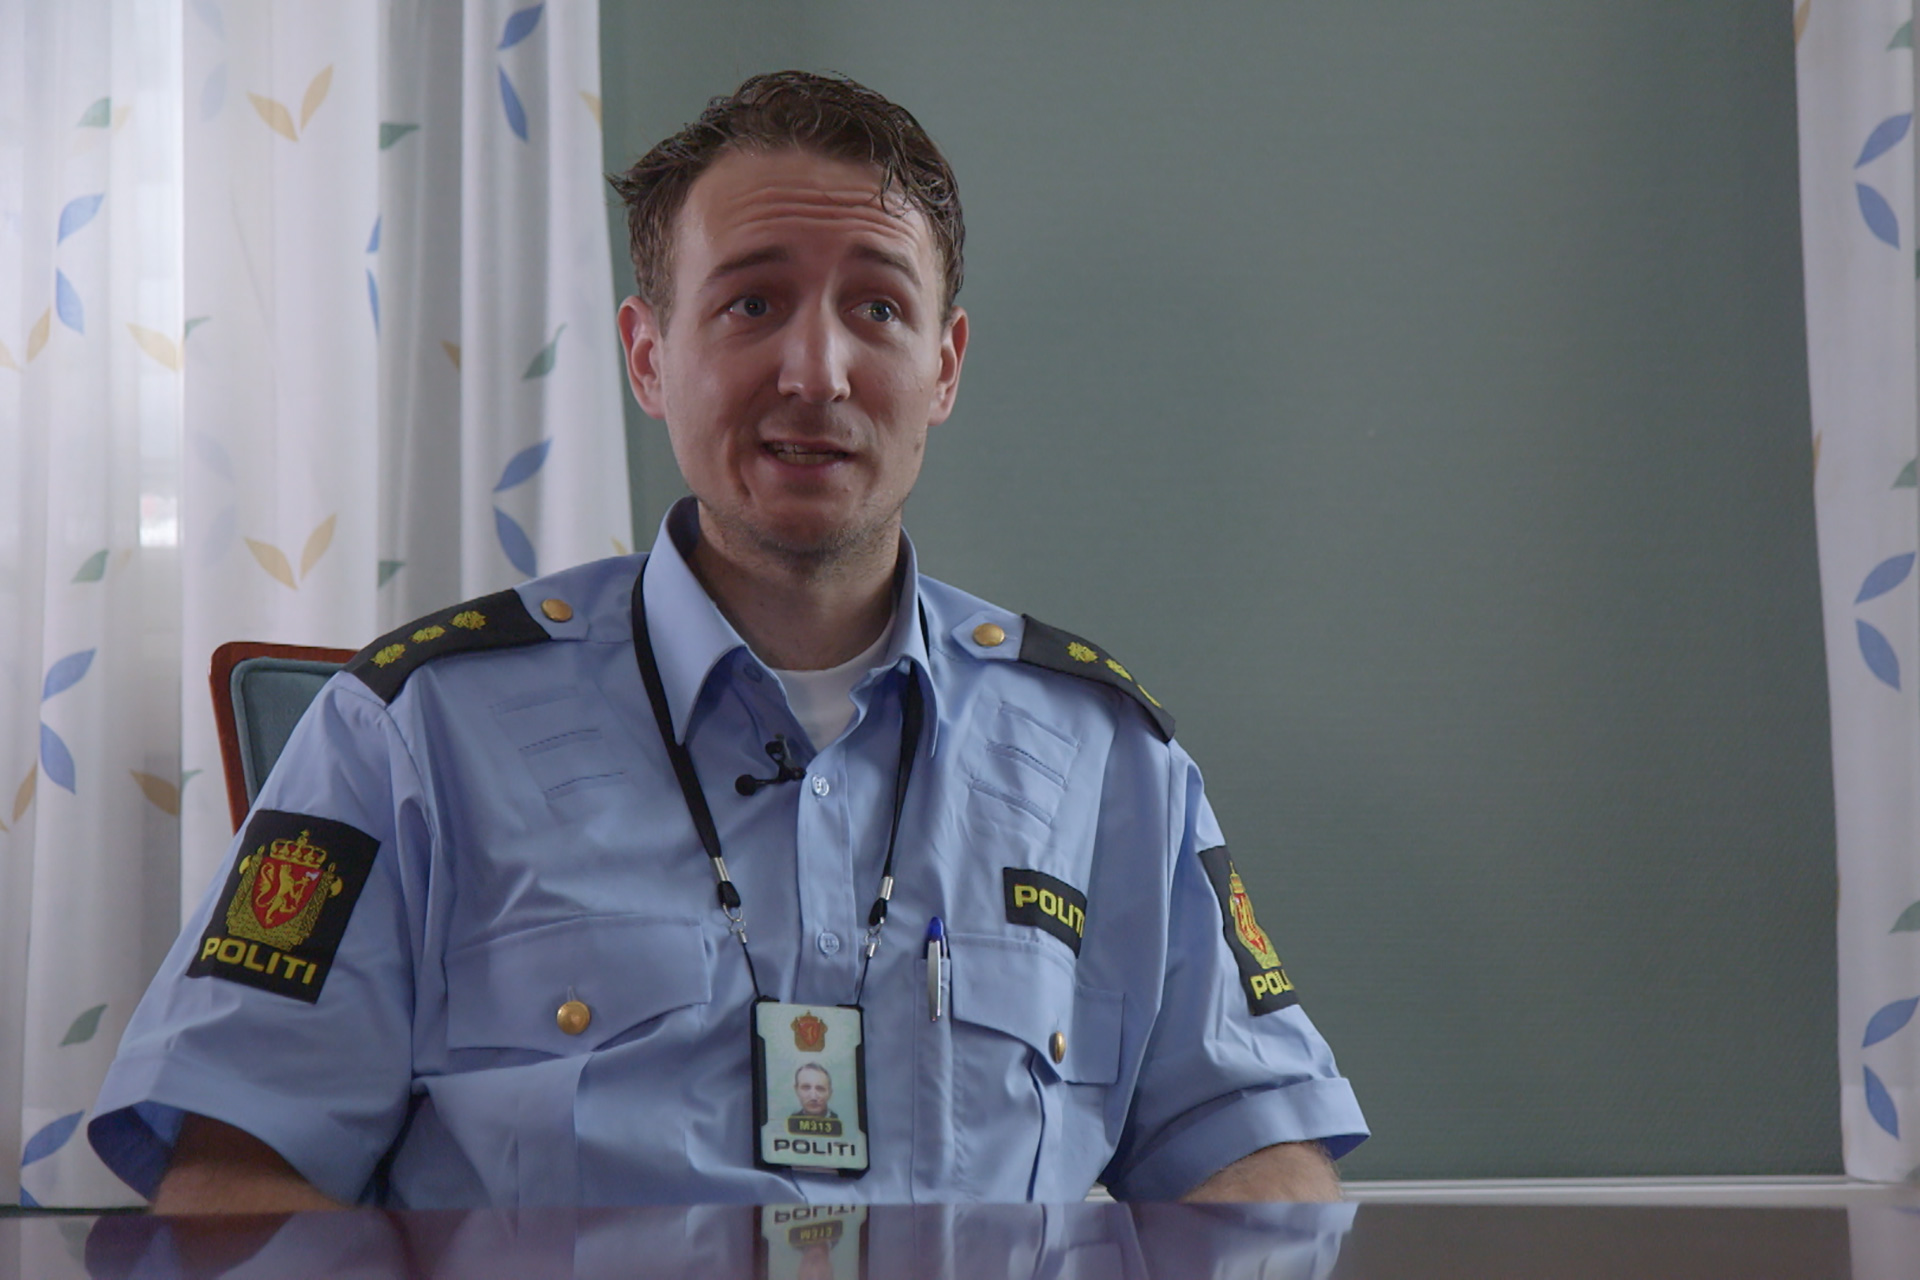 Det er viktig å lufte bekymringene sine ved  mistanke om radikalisering, mener politibetjent Hans Magnus Gjerlaug. Foto: Mattias Müller 